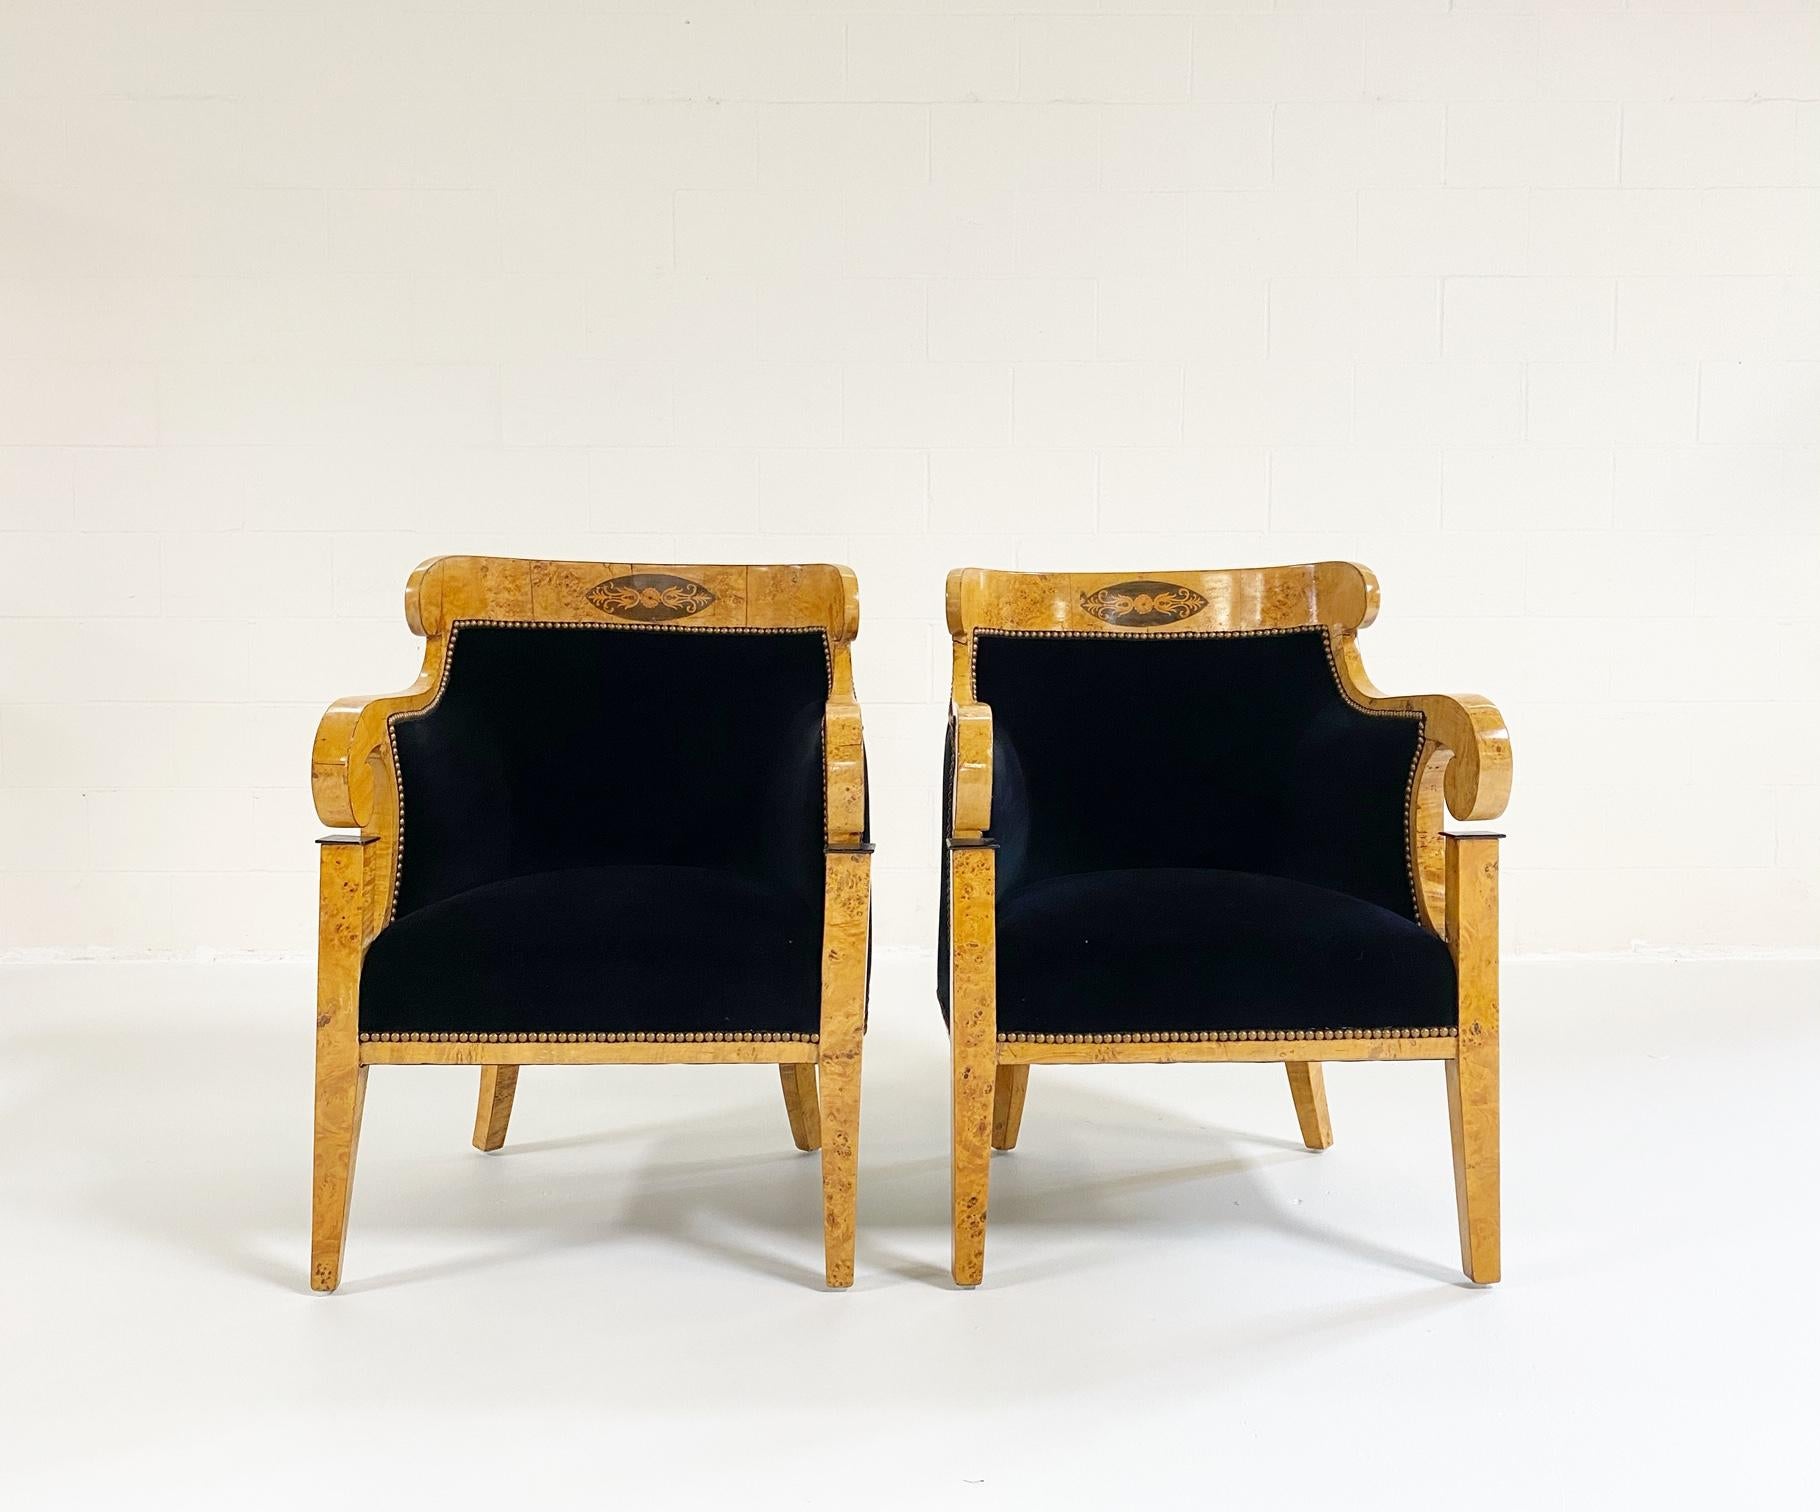 Belle paire de fauteuils Biedermeier, nouvellement restaurés en velours rose Uniacke onyx. Des têtes de clous ont été ajoutées à l'entourage. Chacune d'elles présente une traverse supérieure concave avec un panneau ovale incrusté, reliée à des bras